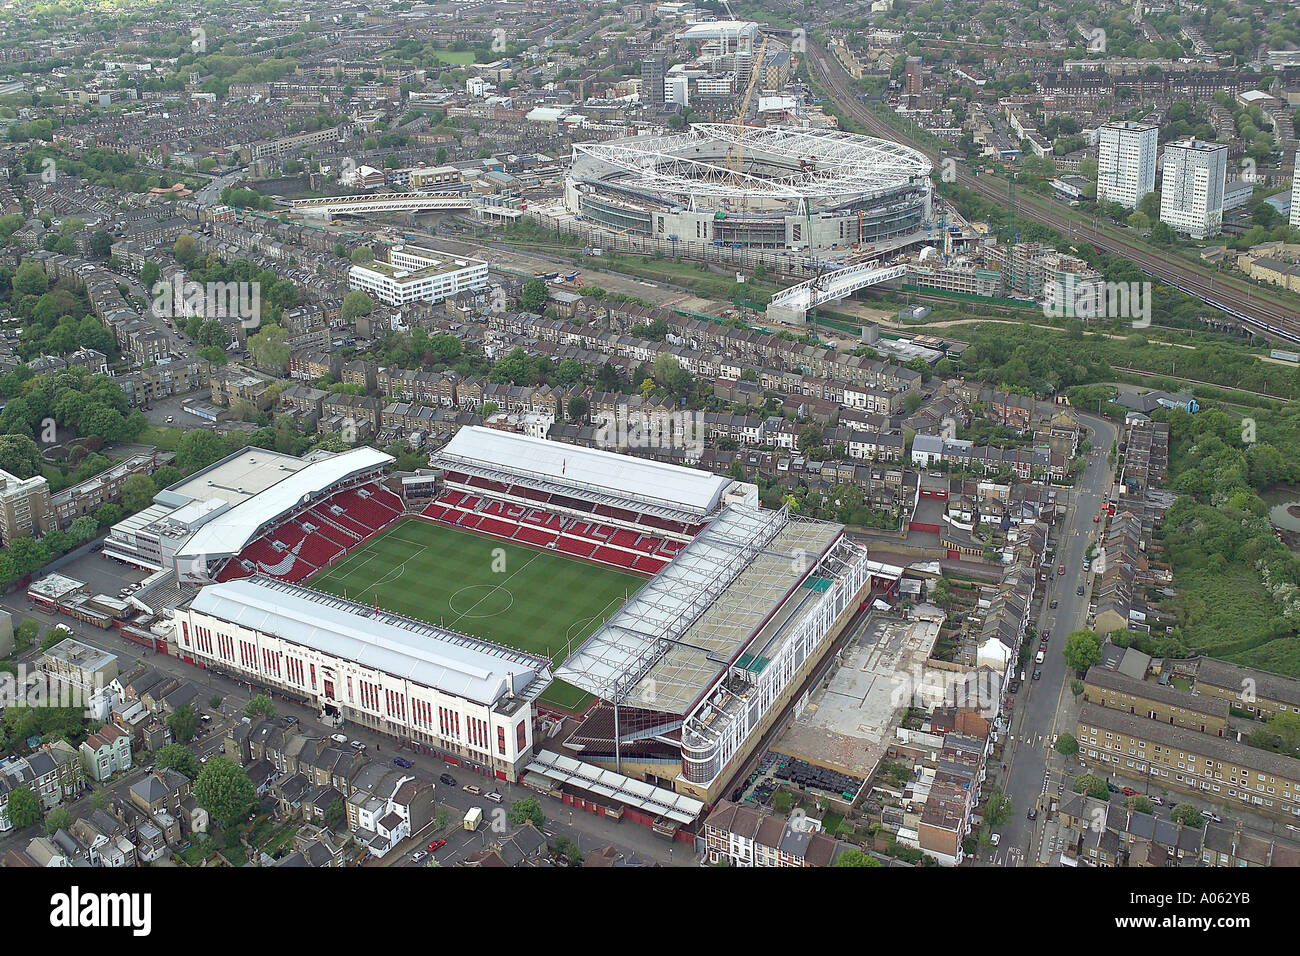 Vue aérienne du Club d'Arsenal montrant le stade Highbury & l'Emirates Stadium, domicile des artilleurs ou les Gooners Banque D'Images